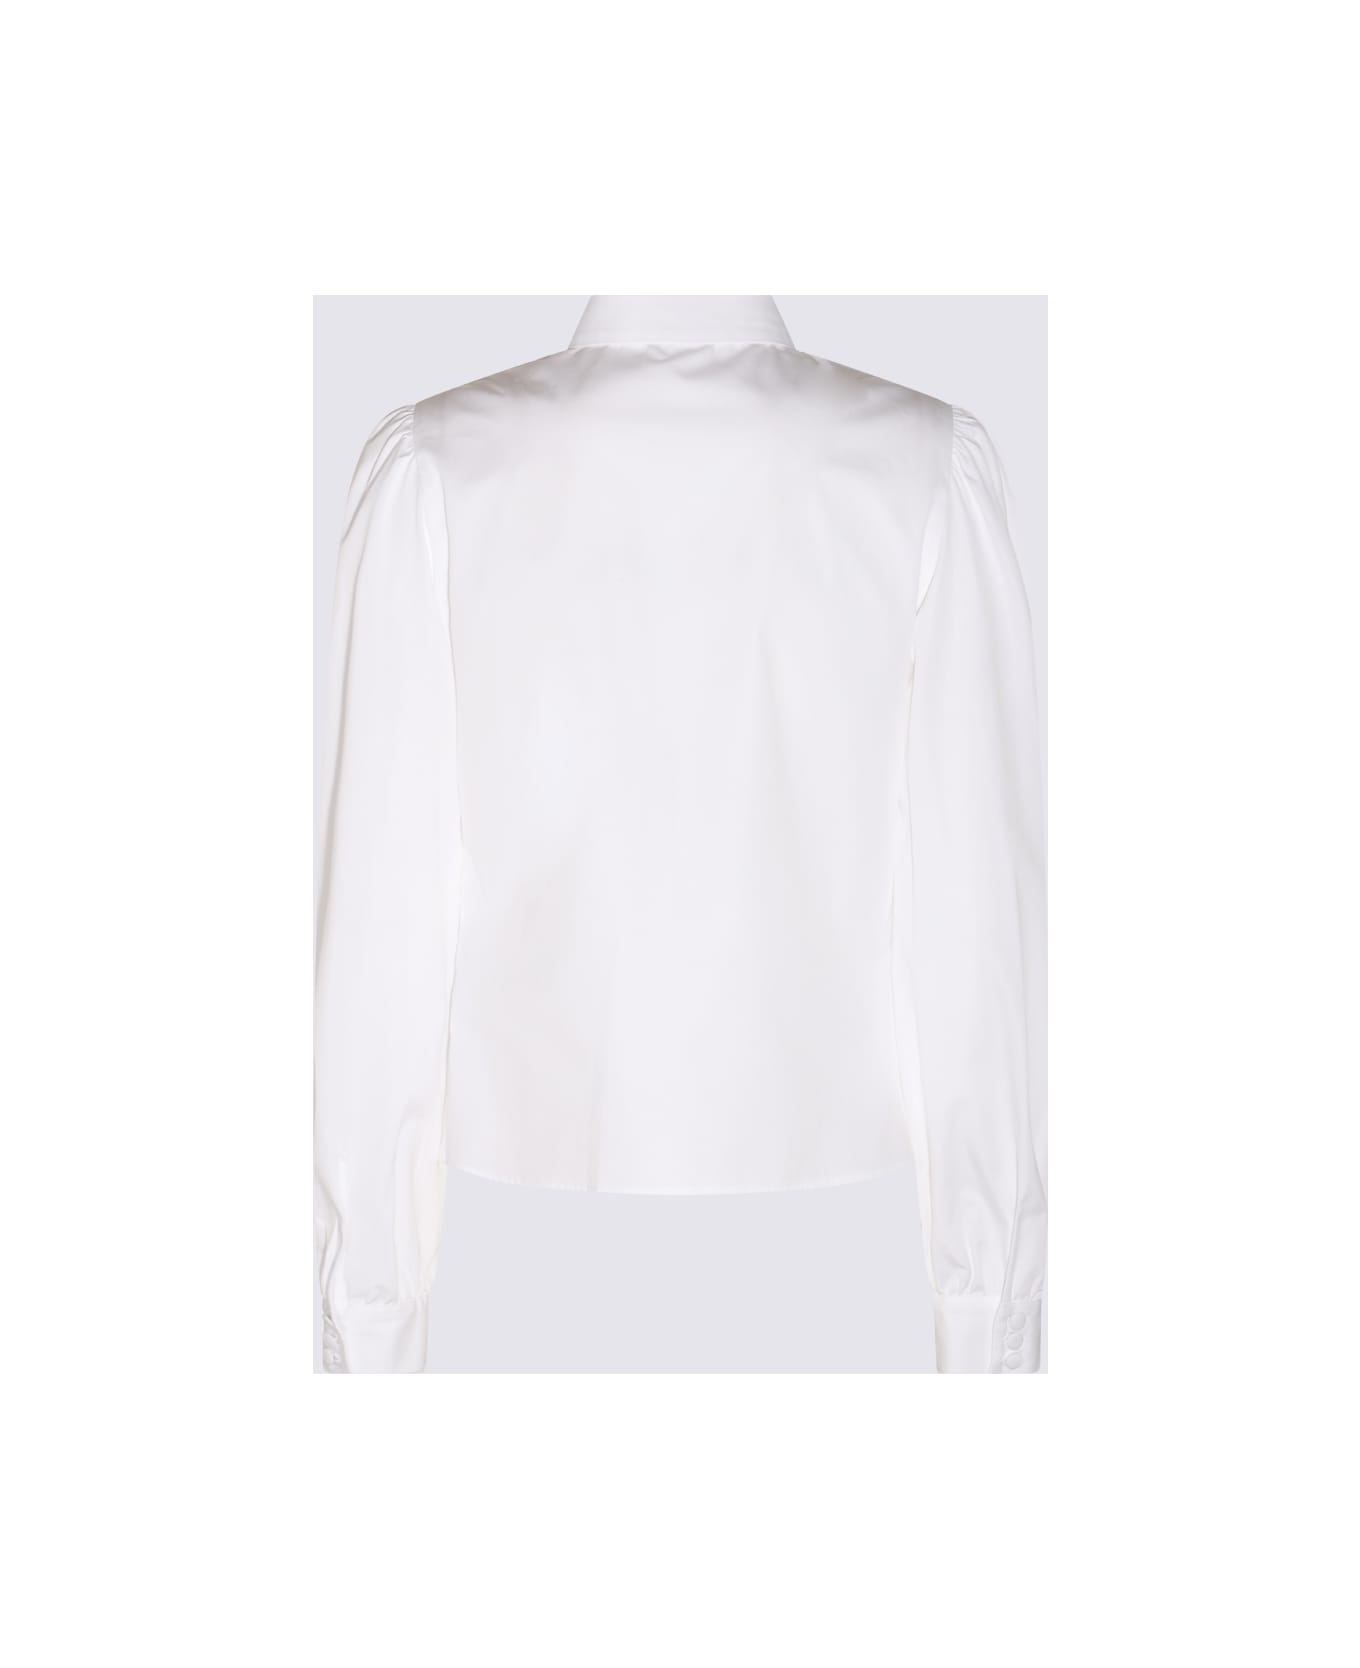 Etro White Cotton Embroidered Shirt - White